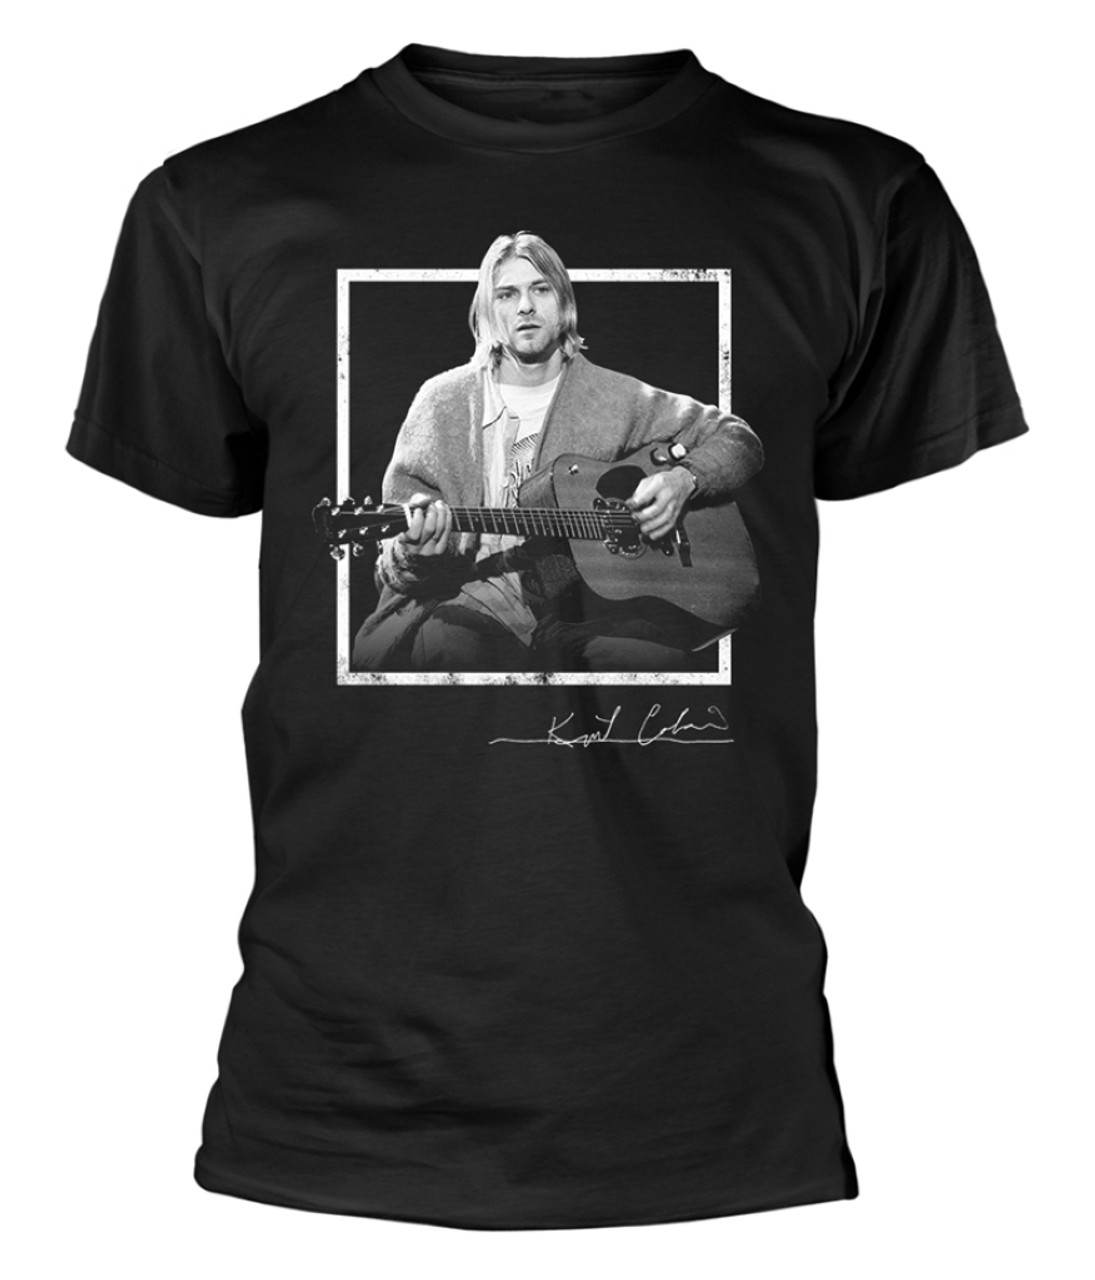 Kurt Cobain 'Play' (Black) T-Shirt